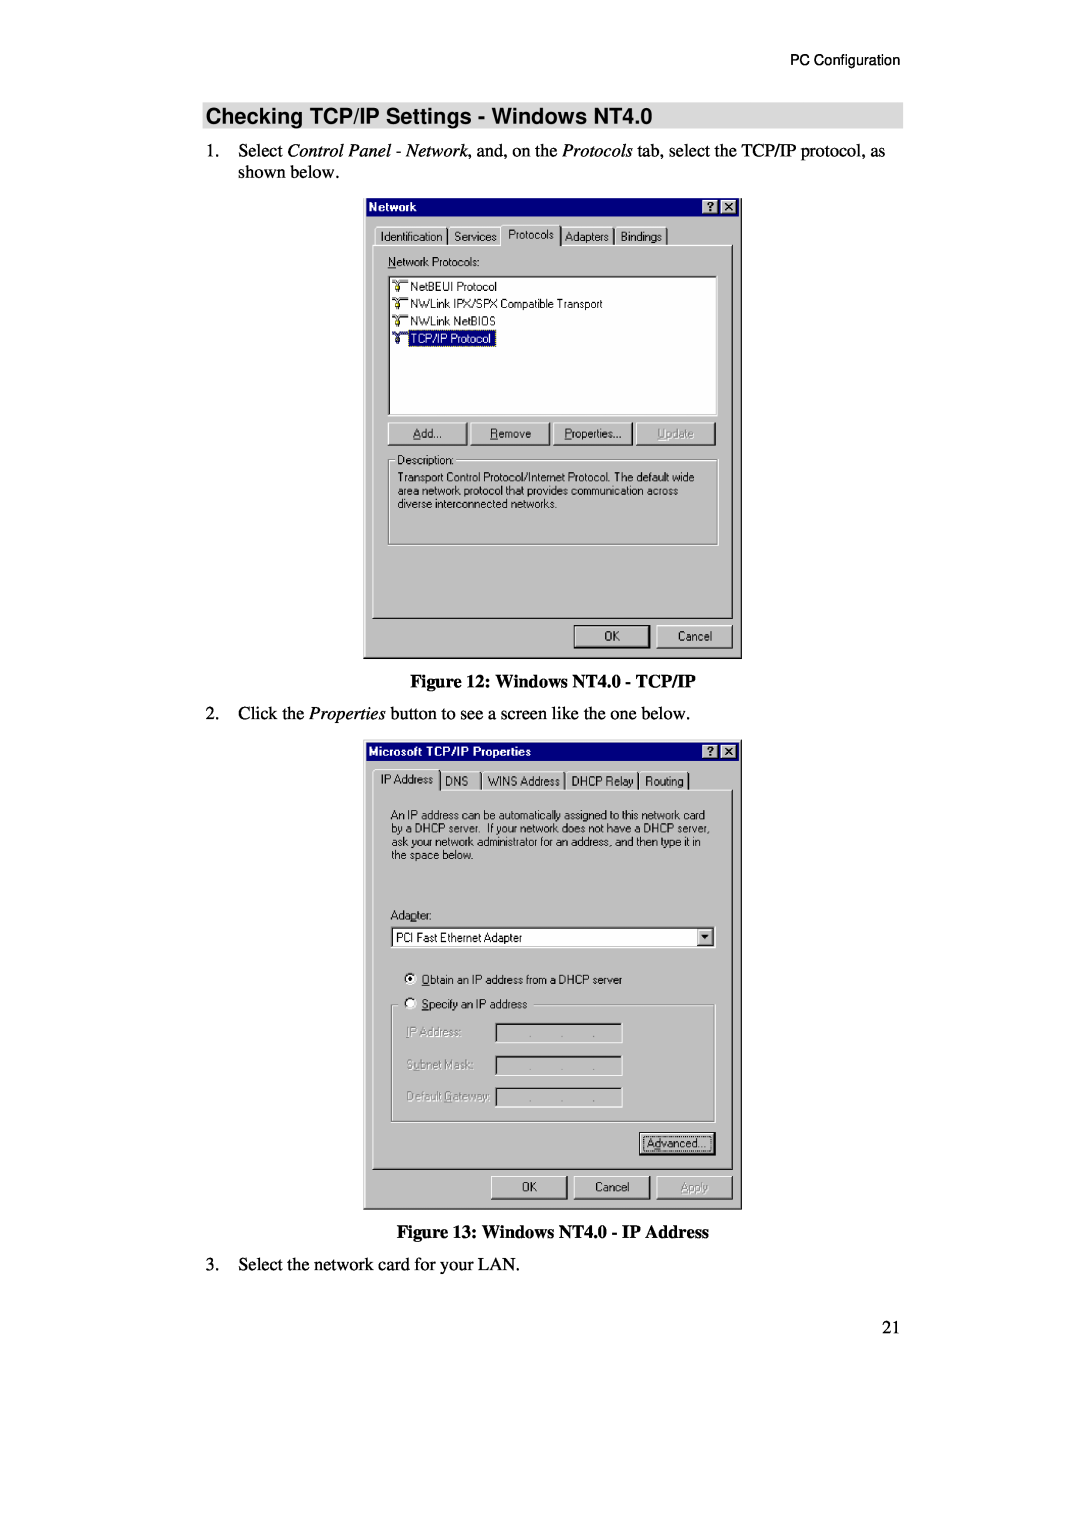 TRENDnet BRV204 manual Checking TCP/IP Settings - Windows NT4.0, Windows NT4.0 - TCP/IP, Windows NT4.0 - IP Address 